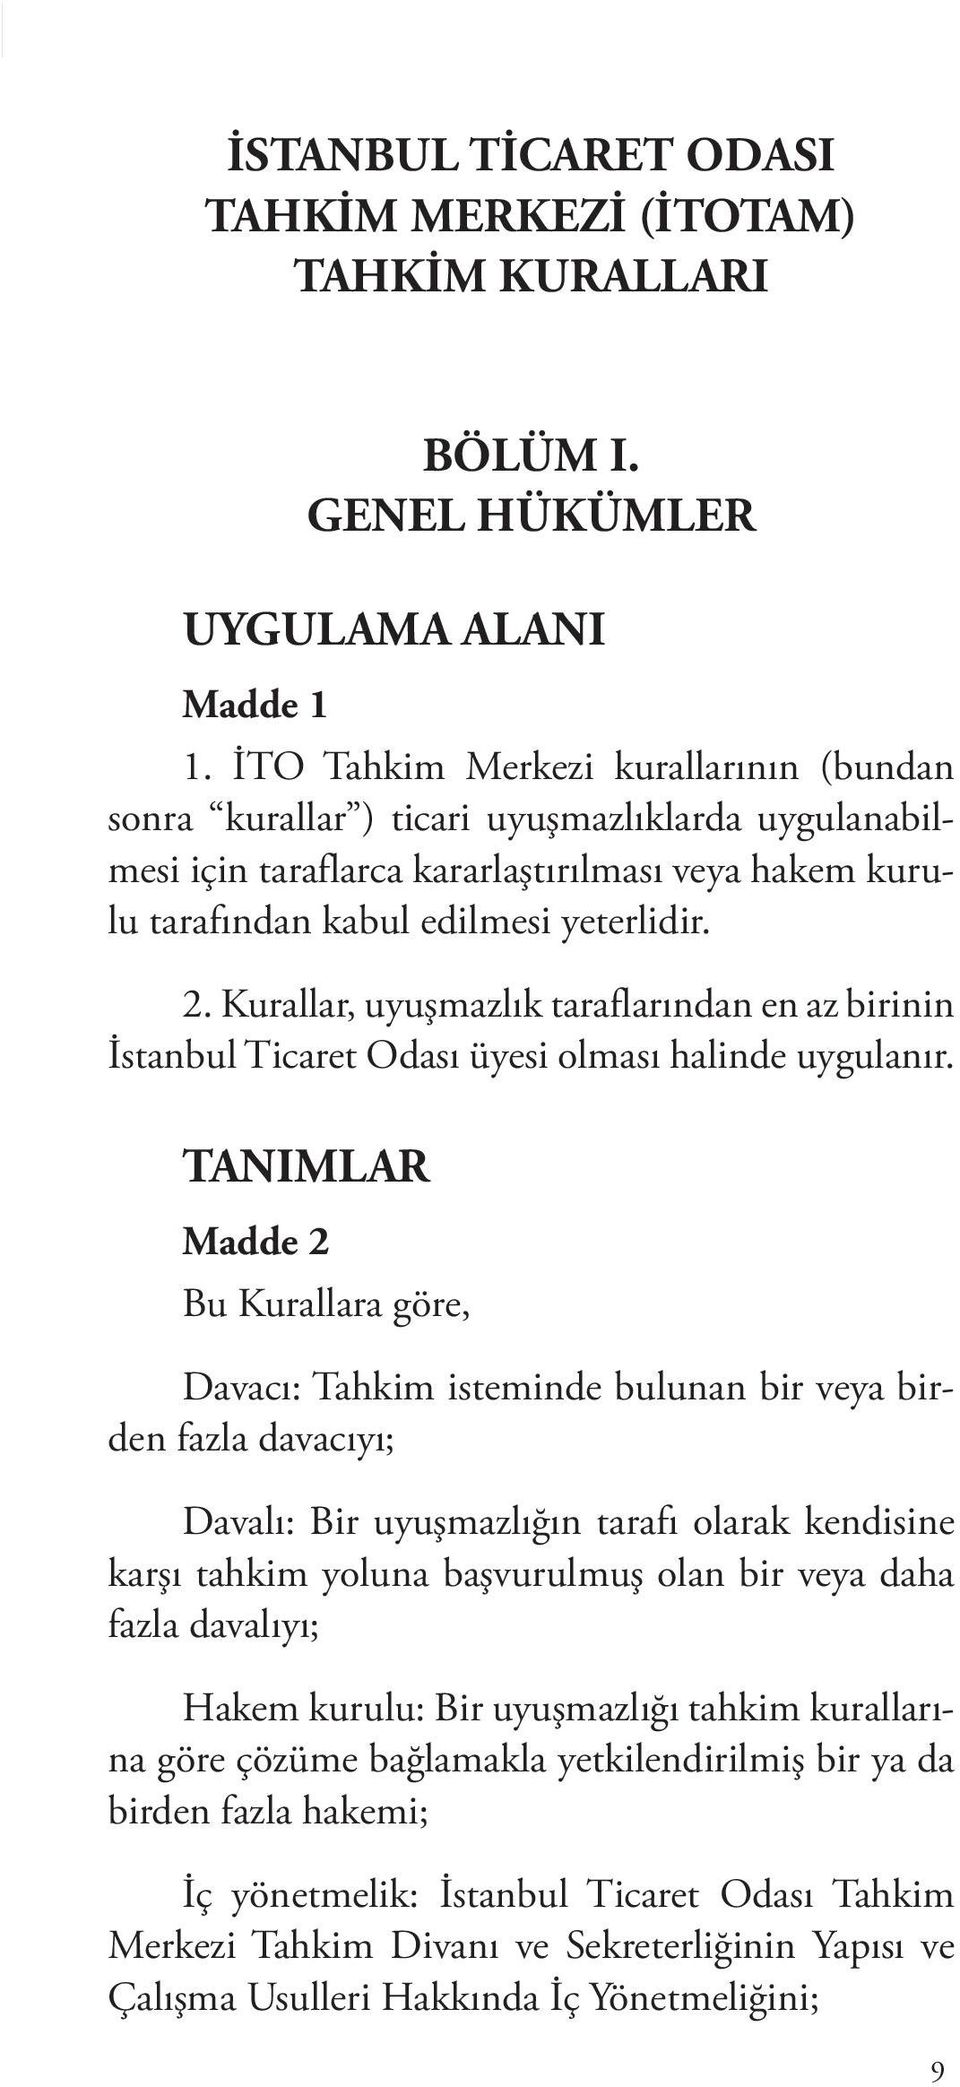 Kurallar, uyuşmazlık taraflarından en az birinin İstanbul Ticaret Odası üyesi olması halinde uygulanır.